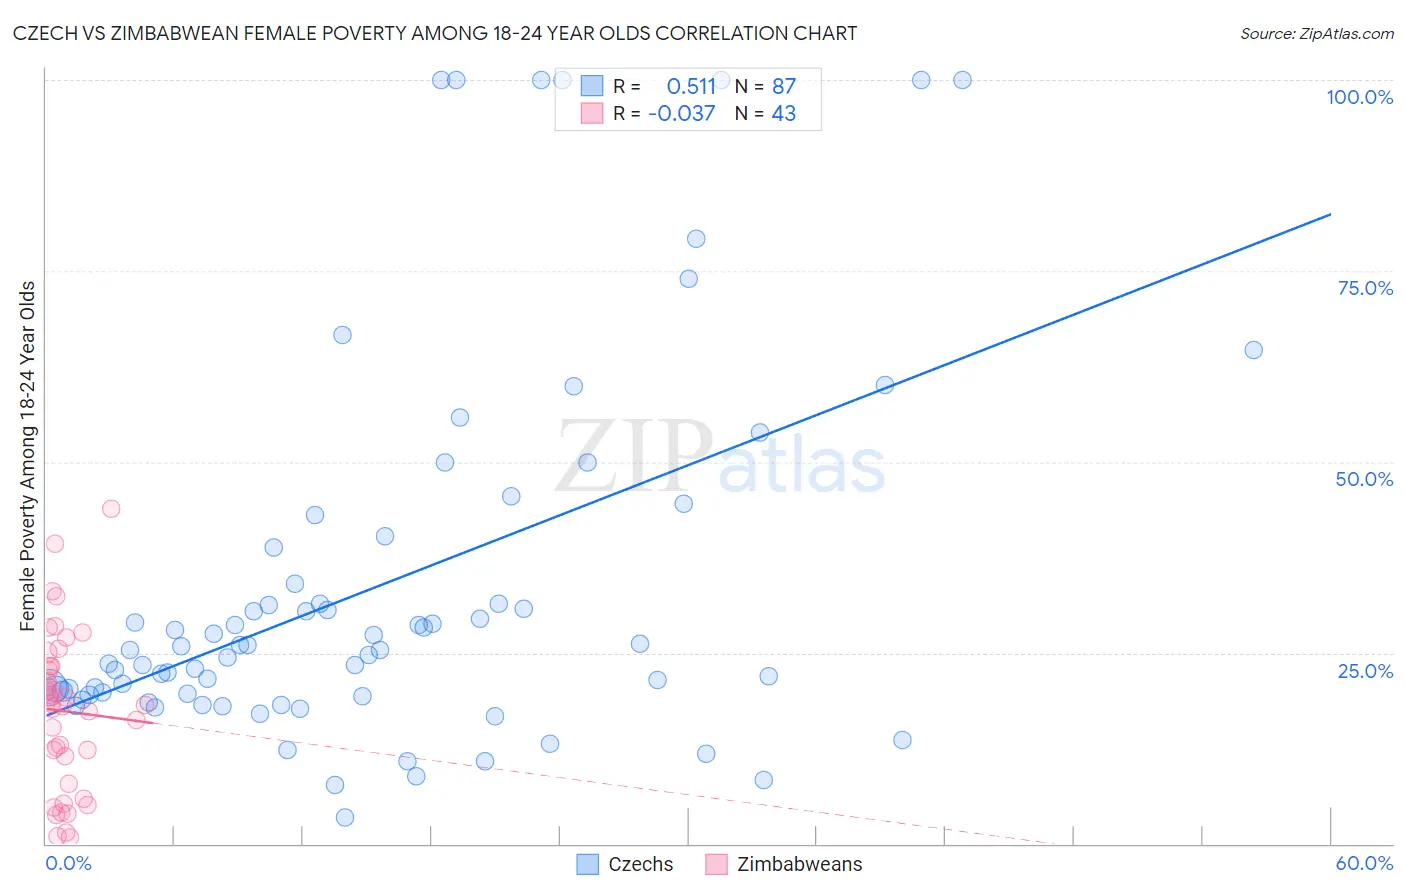 Czech vs Zimbabwean Female Poverty Among 18-24 Year Olds